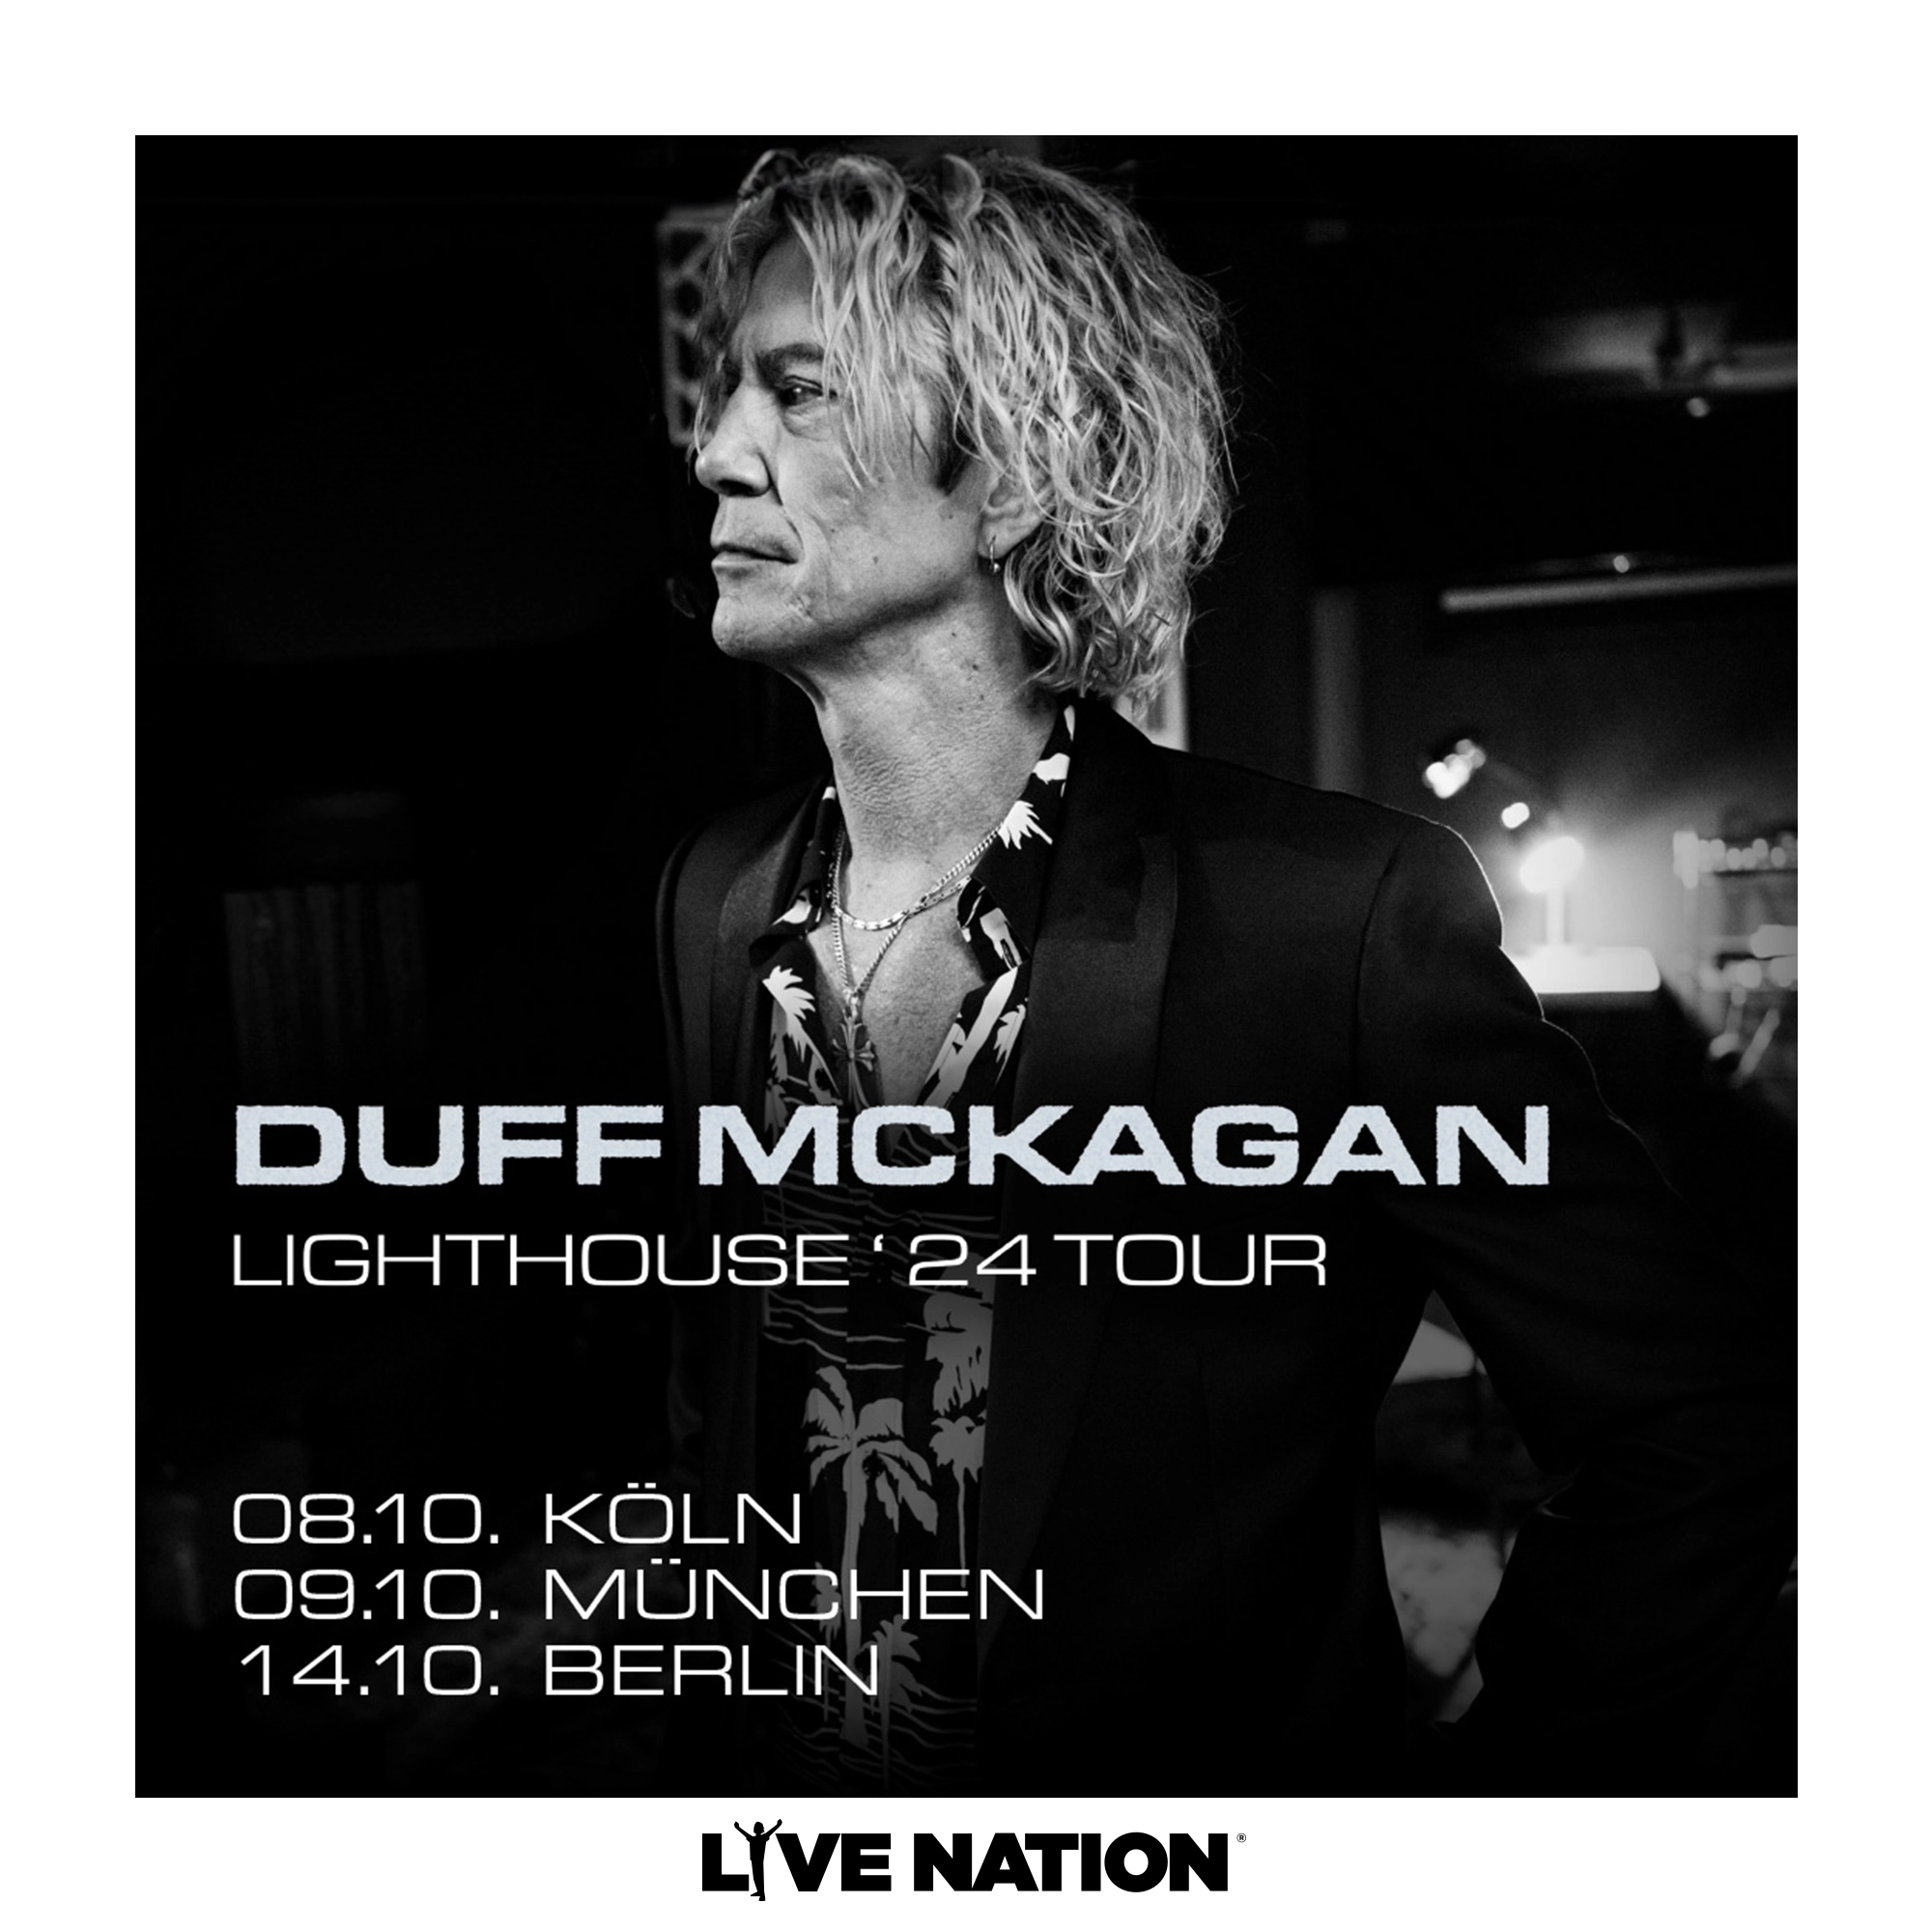 Duff Mckagan - Lighthouse Tour '24 in der Kantine Köln Tickets